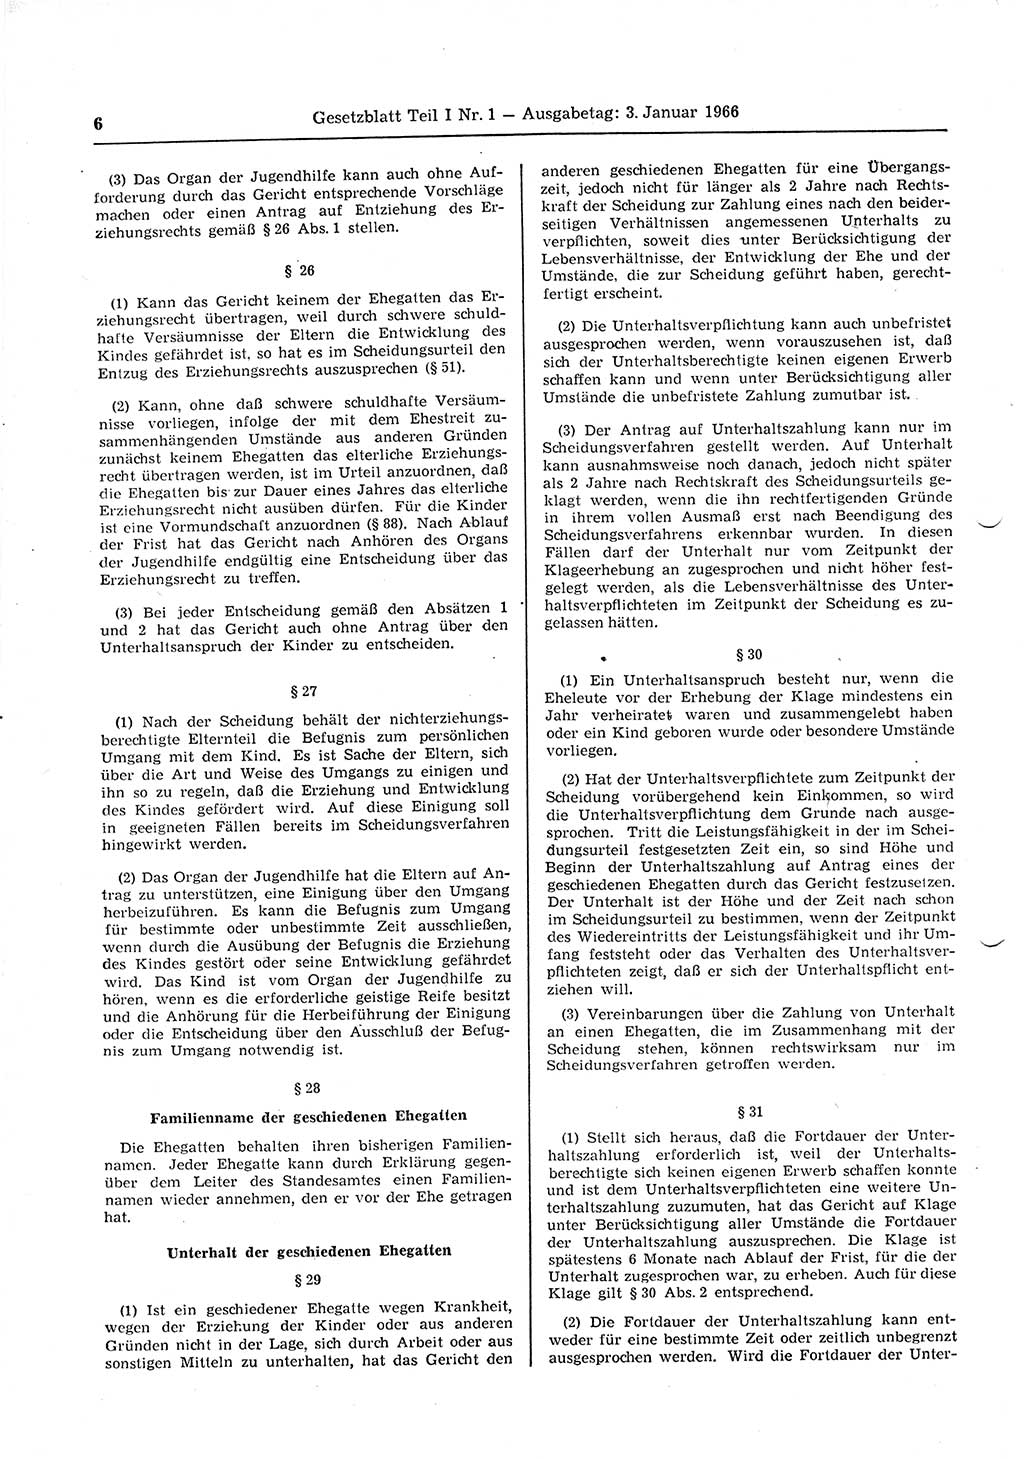 Gesetzblatt (GBl.) der Deutschen Demokratischen Republik (DDR) Teil Ⅰ 1966, Seite 6 (GBl. DDR Ⅰ 1966, S. 6)